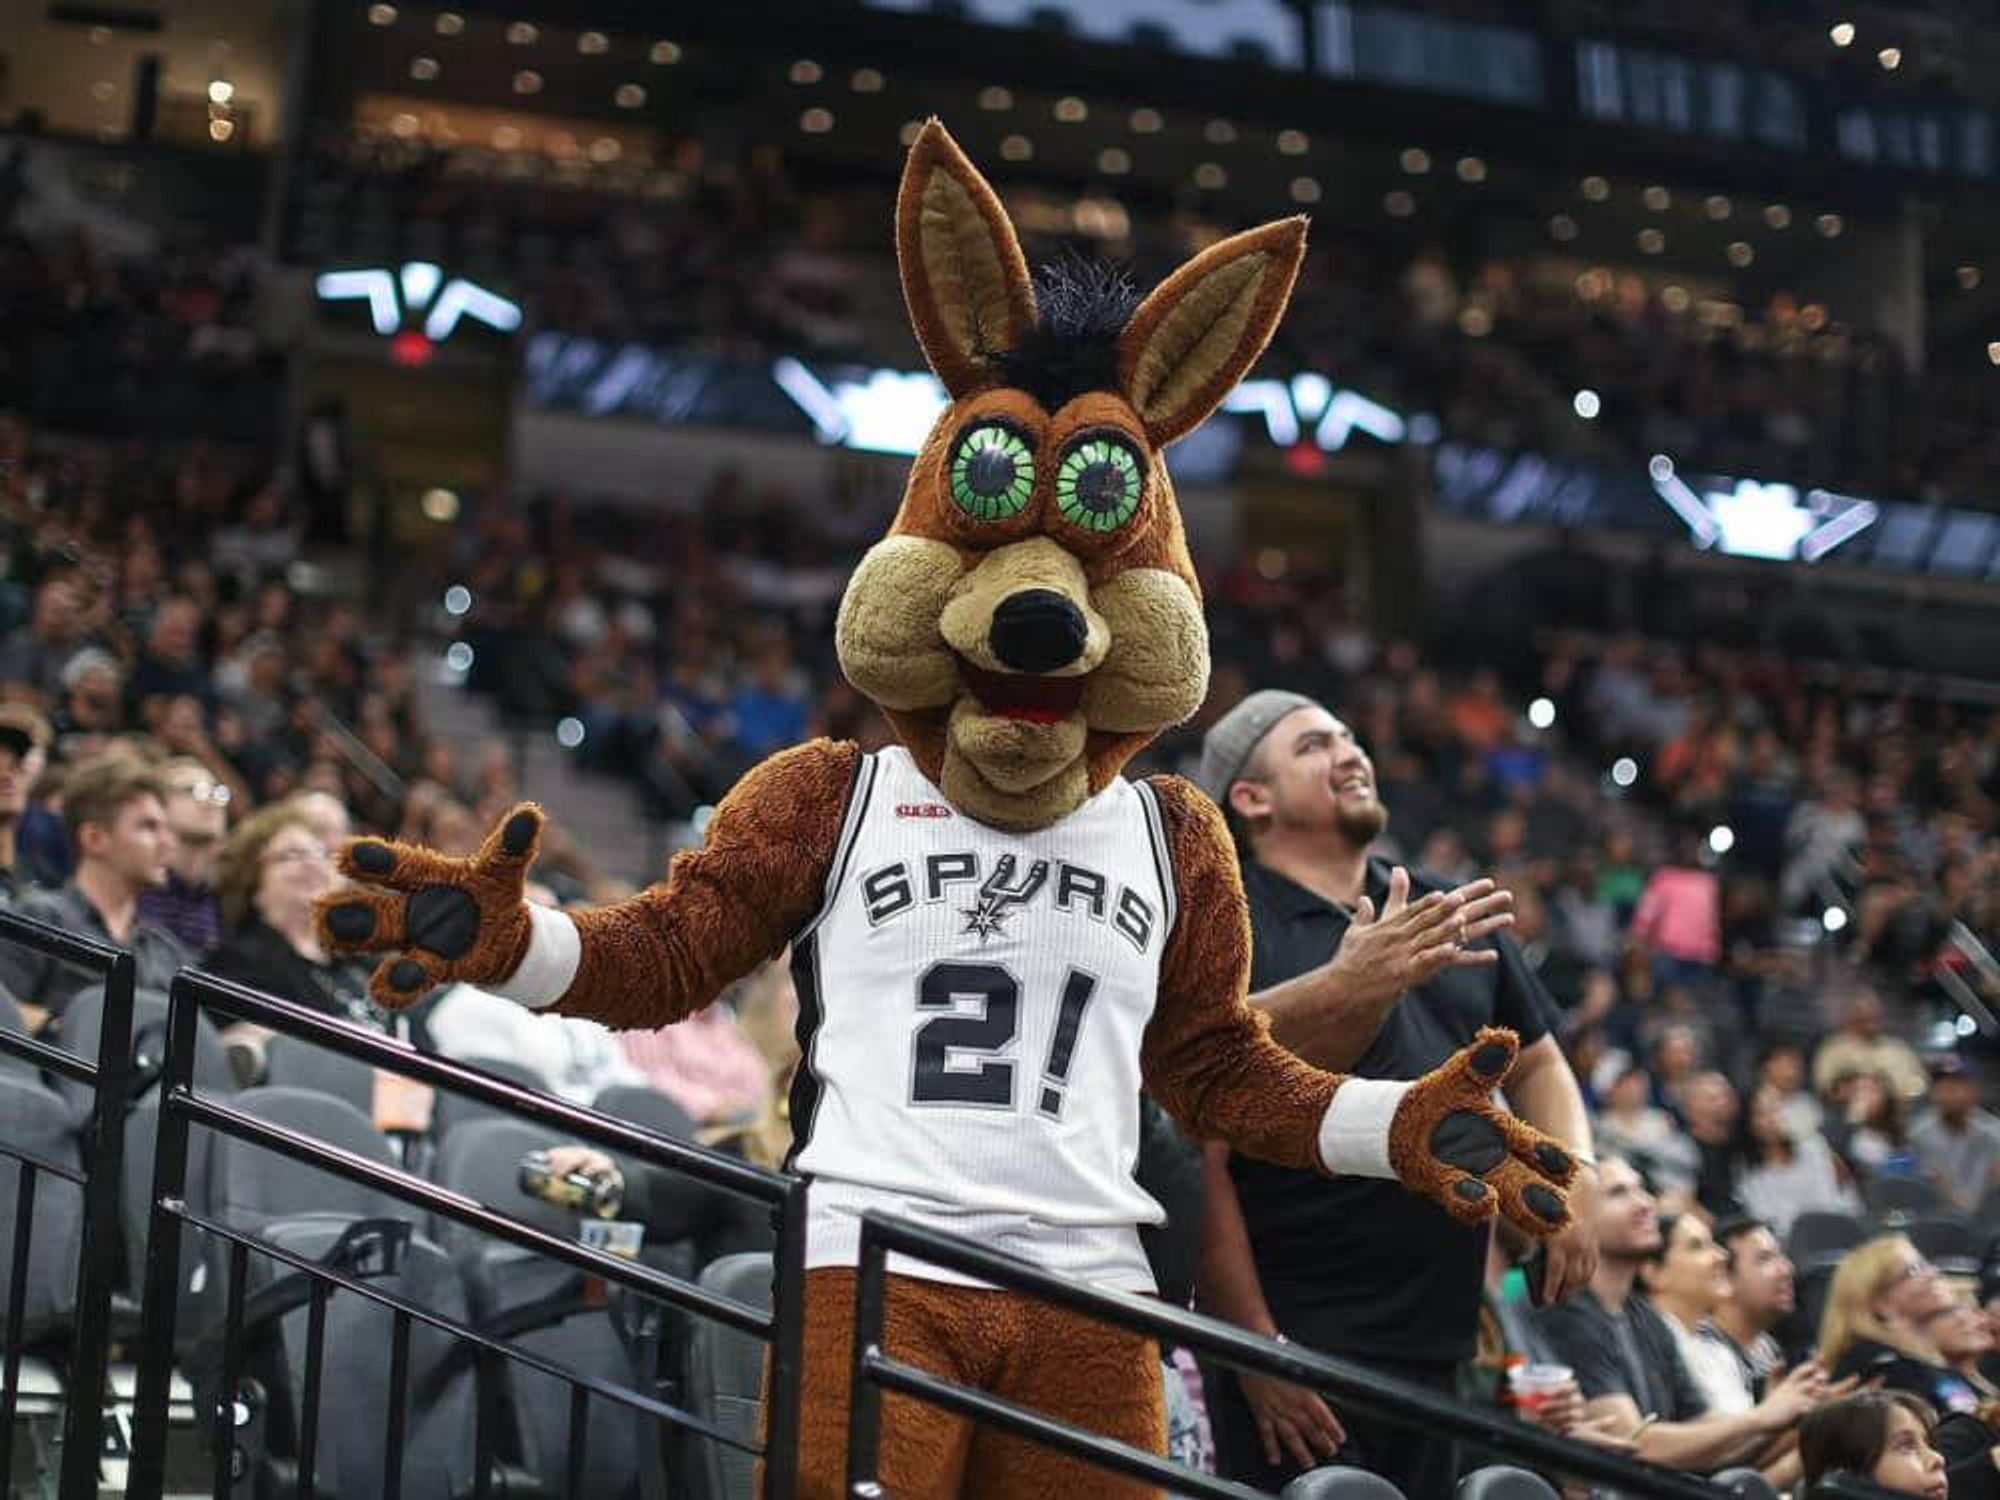 Meet the man behind the Spurs mascot